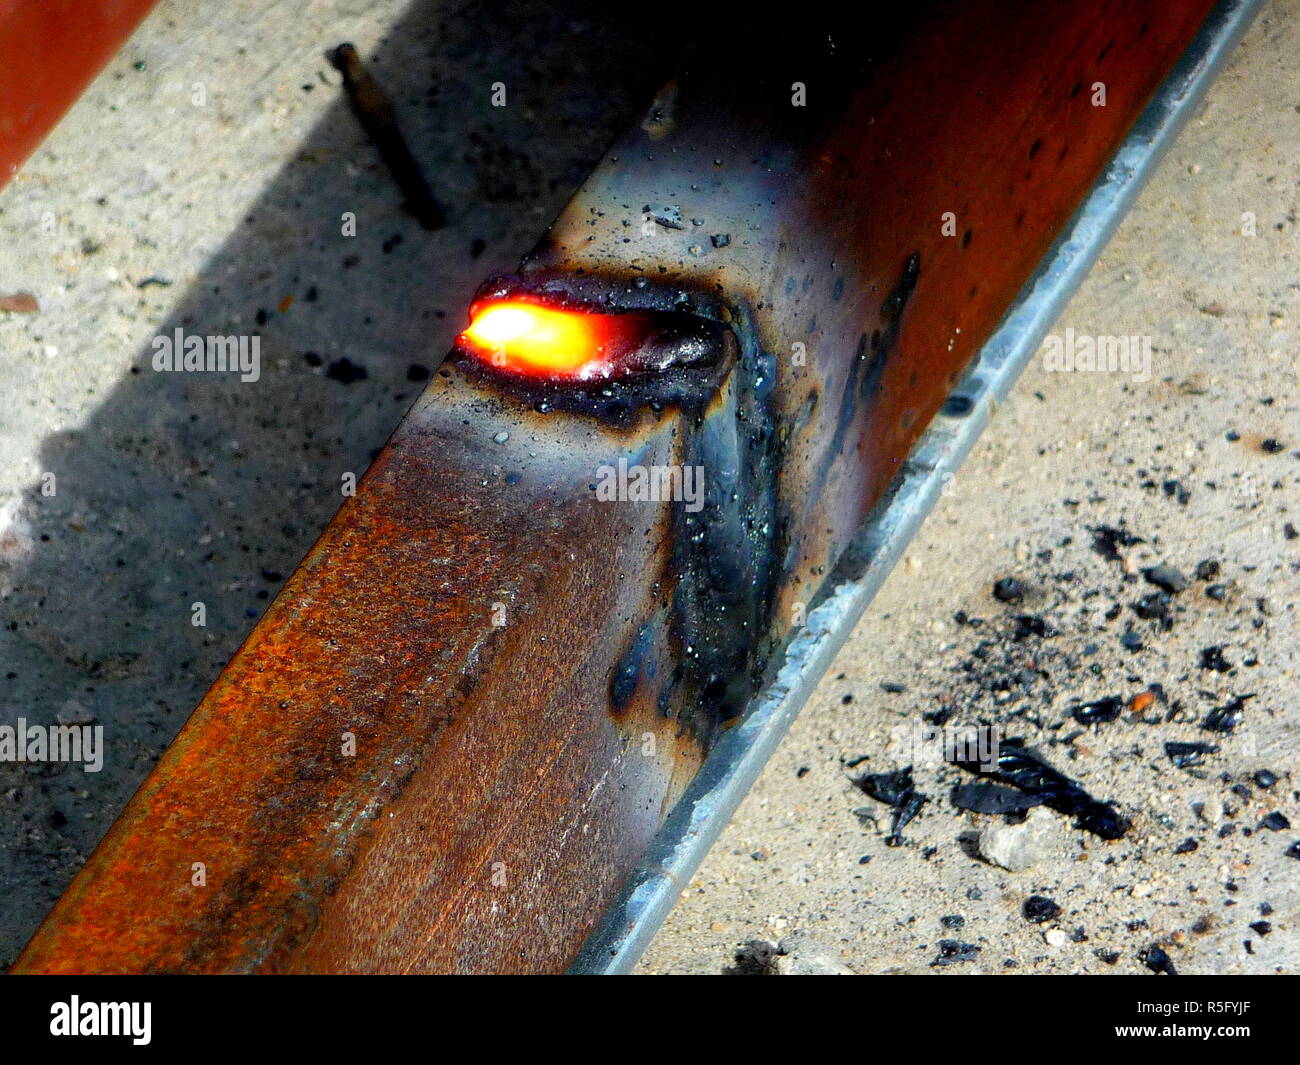 Heiße Funken des Feuers von Stahl Schneidemaschinen wenn Männer mit dem Schleifer disc Stahl oder der Sauerstoff Schweißarbeiten an Stahl schneiden Teile zusammen zu schweißen Stockfoto